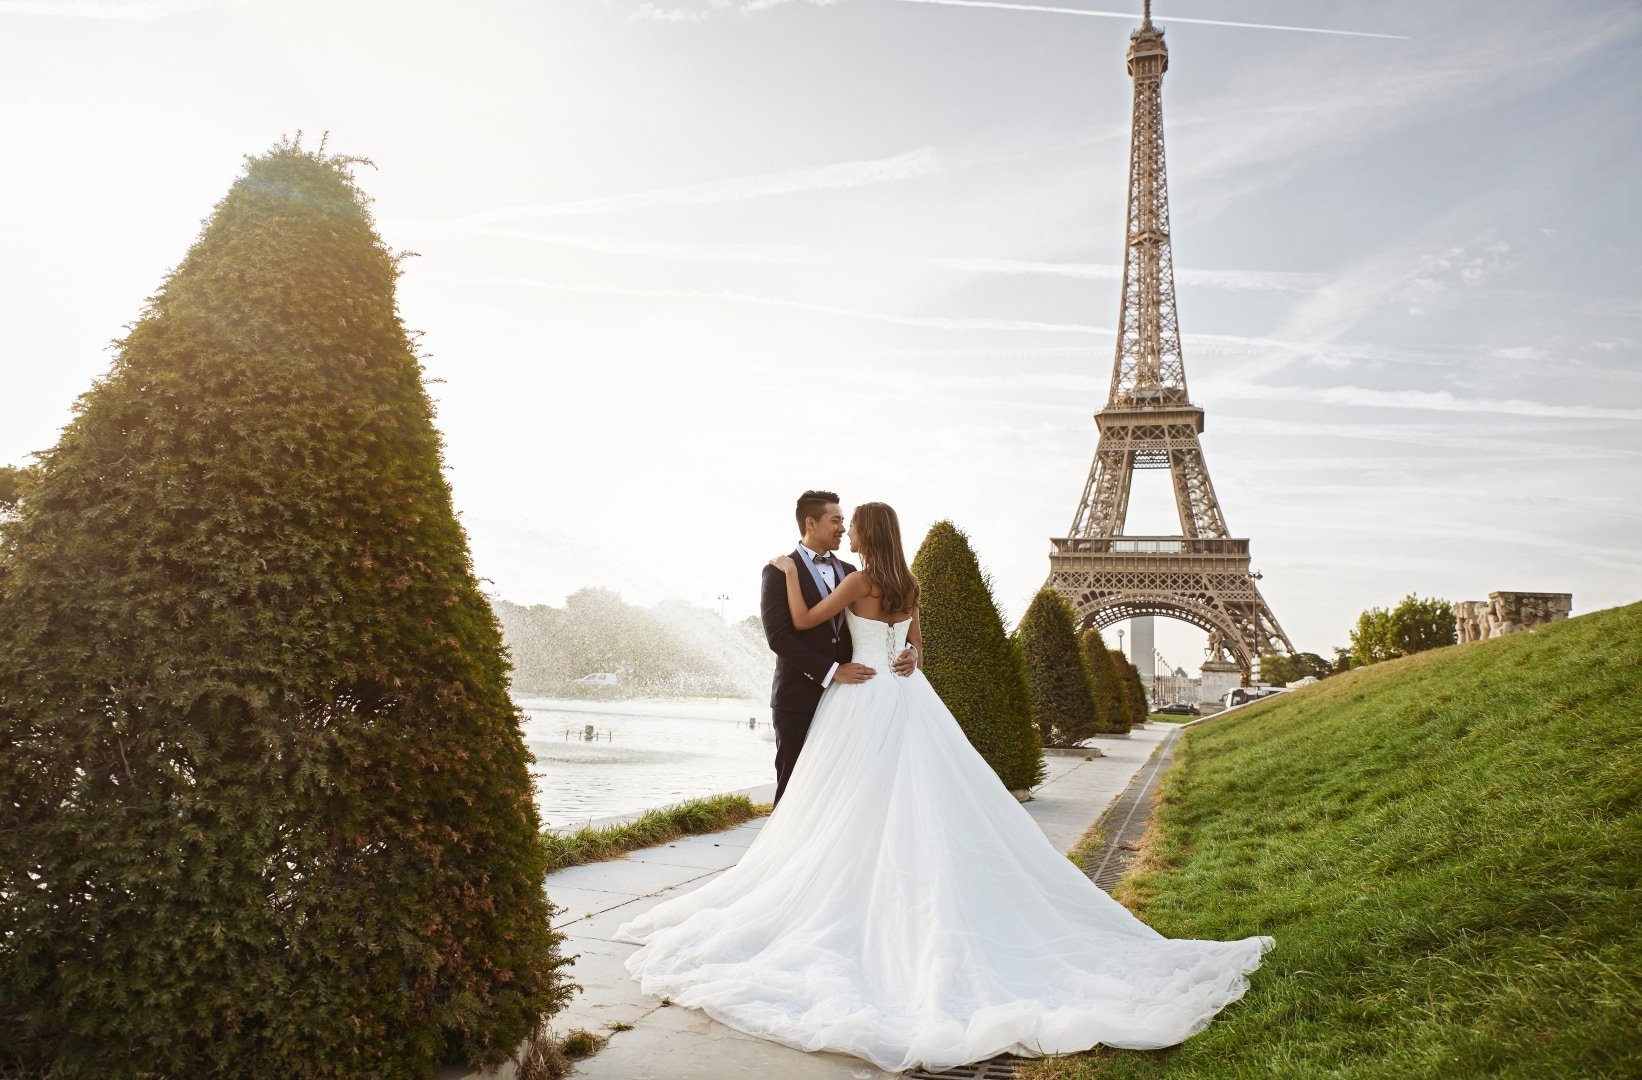 Свадьба в стиле париж – праздник в атмосфере французского шарма